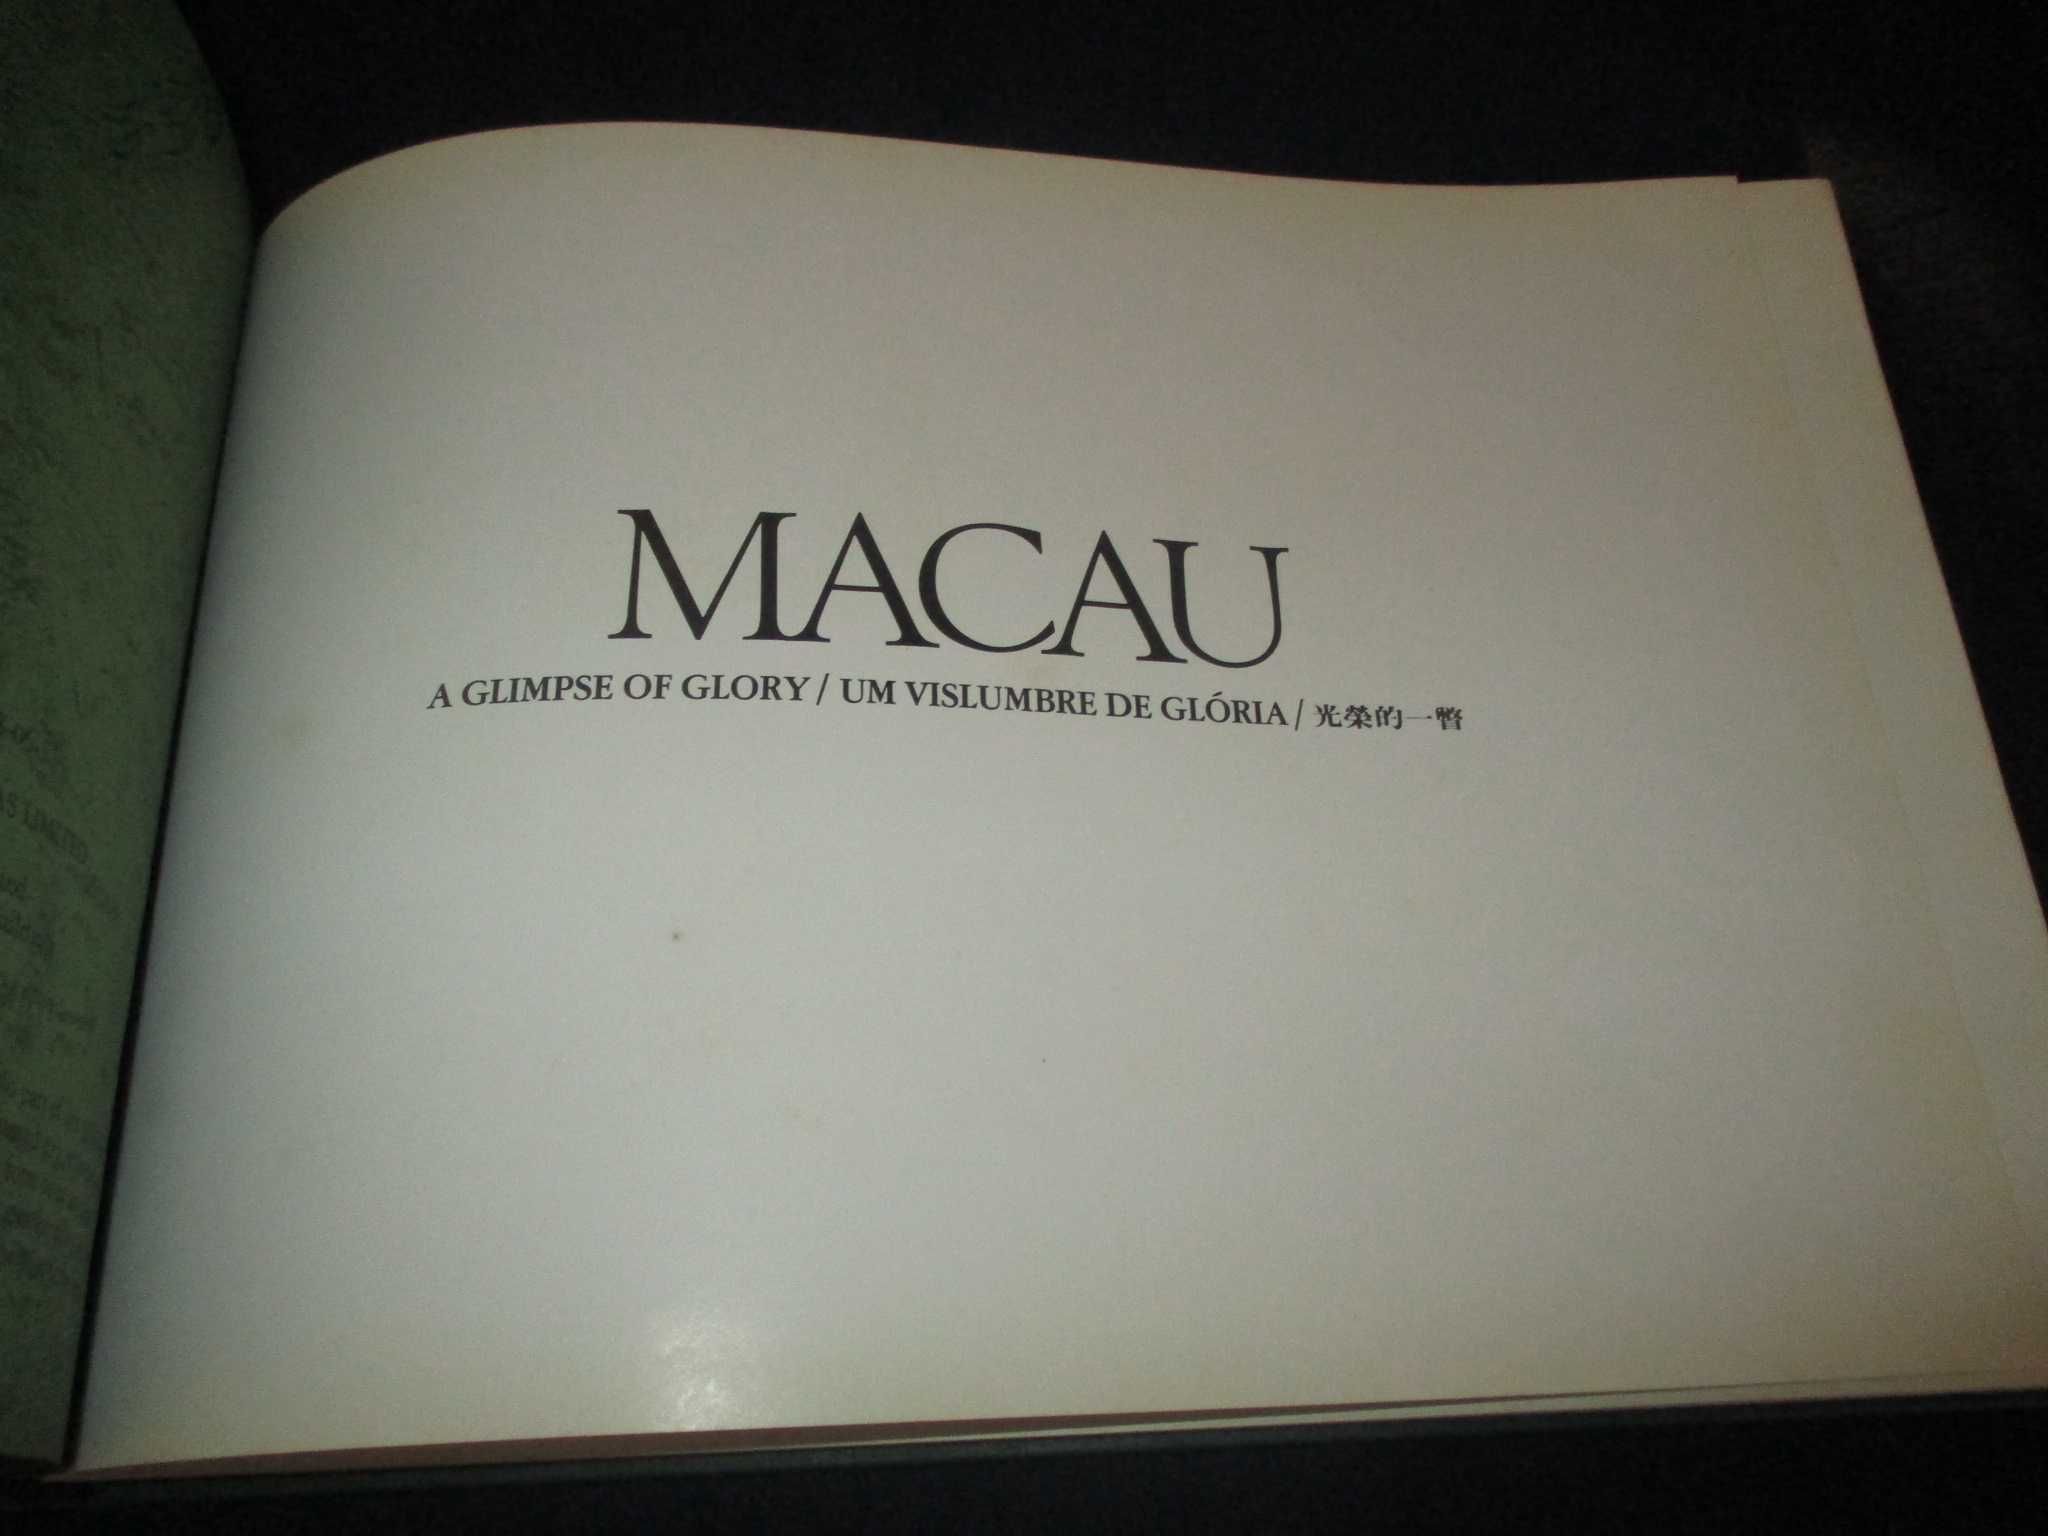 Livro Macau Um Vislumbre de Glória Edição restrita A Glimpse of Glory